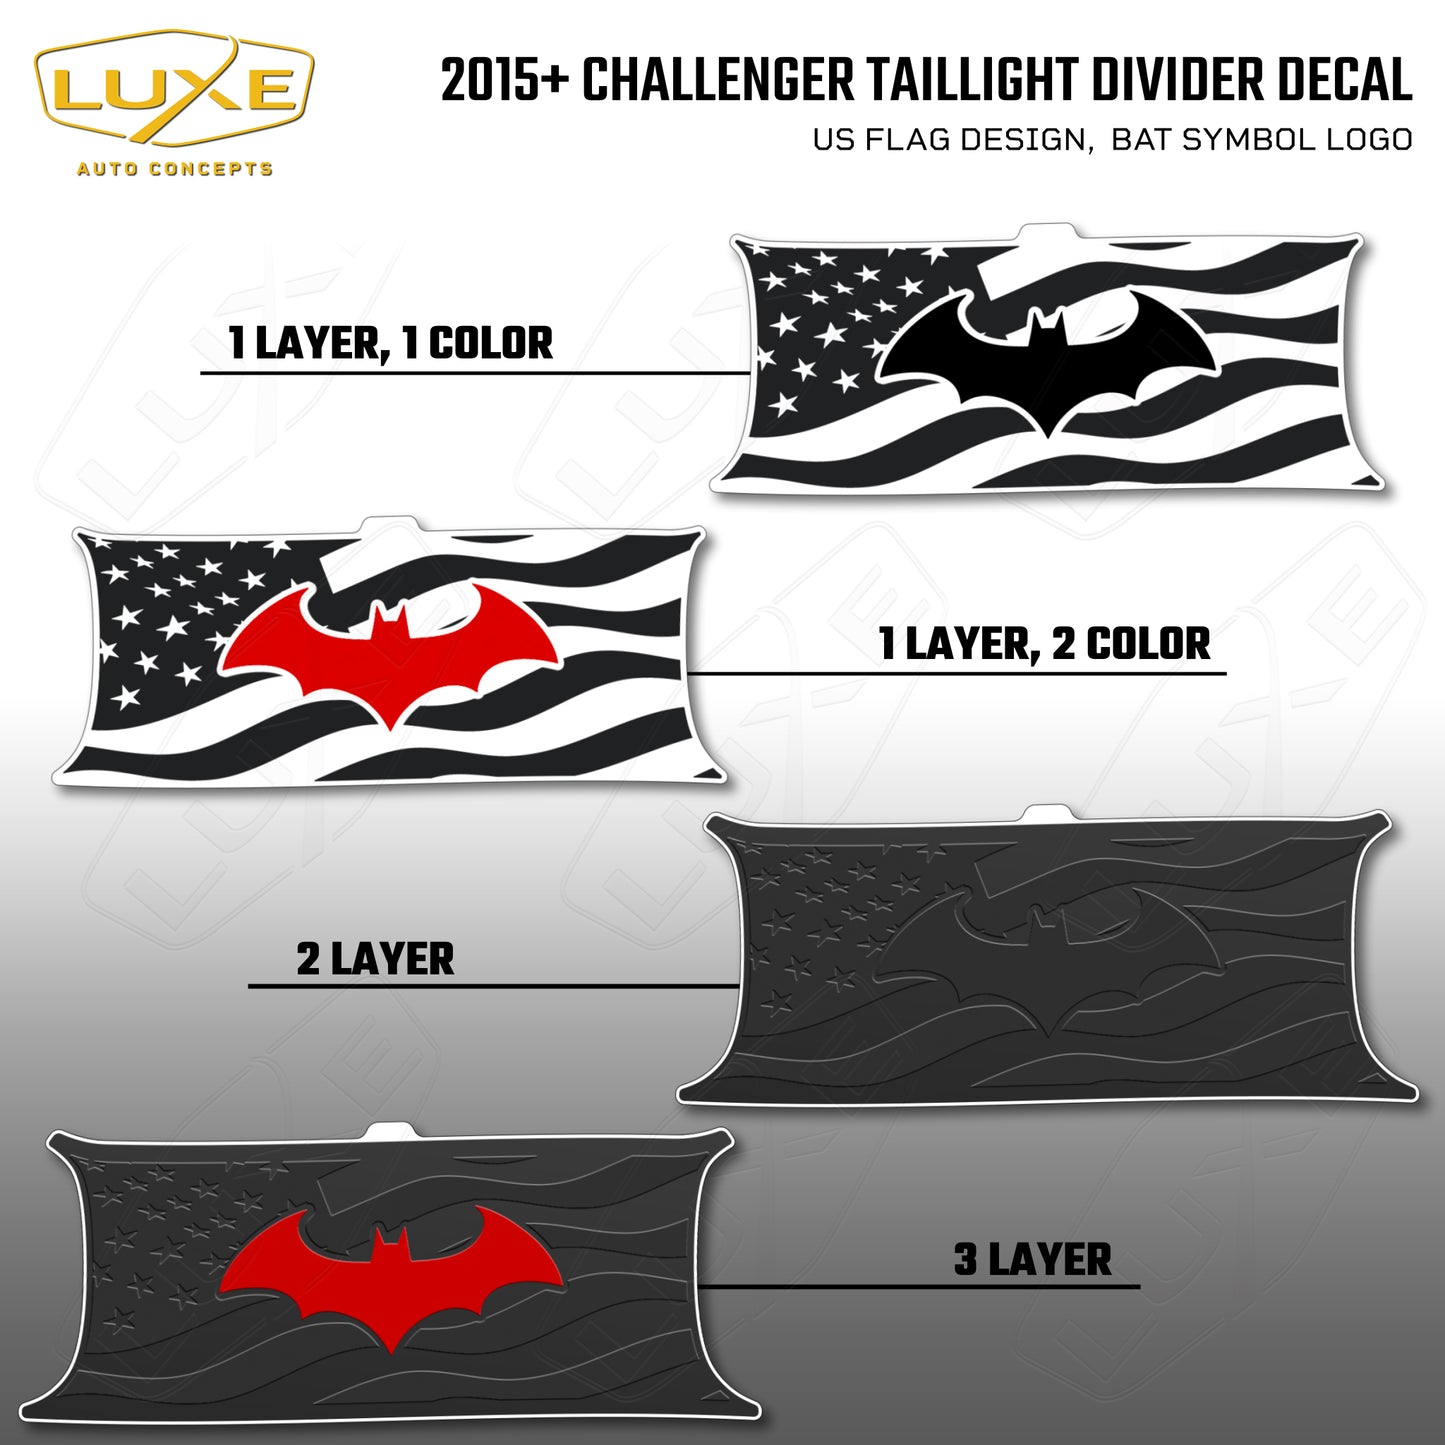 2015+ Challenger Taillight Center Divider Decal - US Flag Design, Bat Symbol